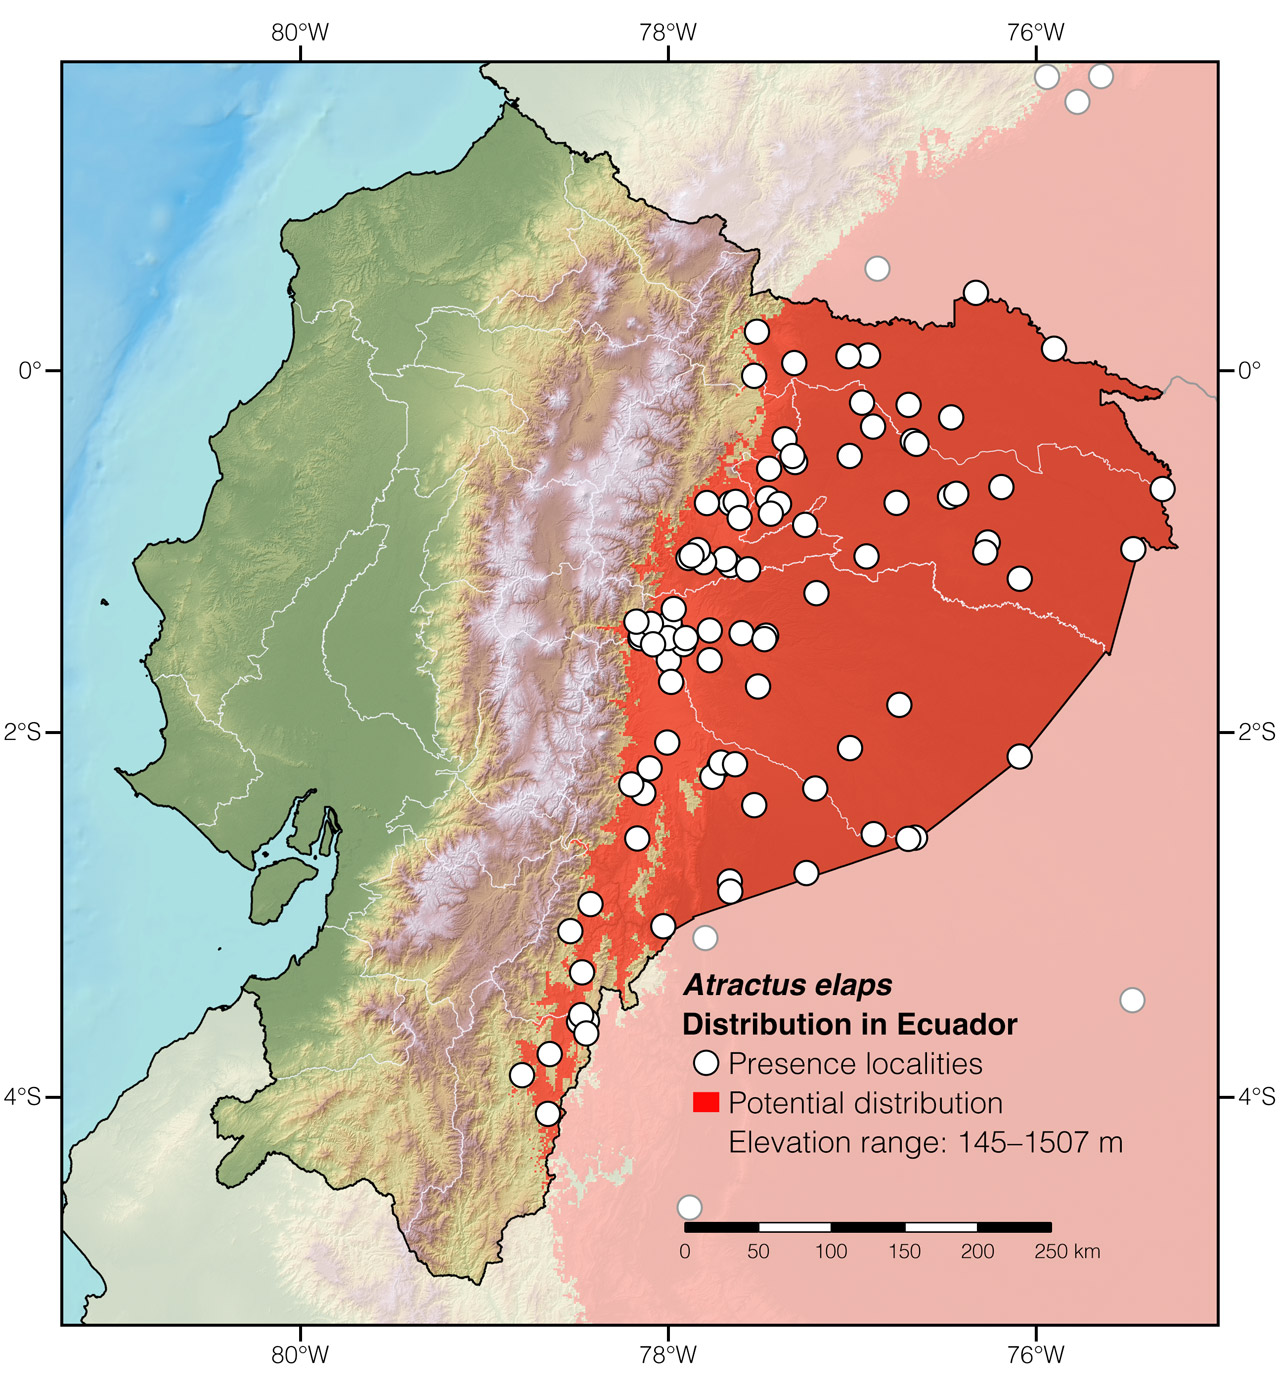 Distribution of Atractus elaps in Ecuador